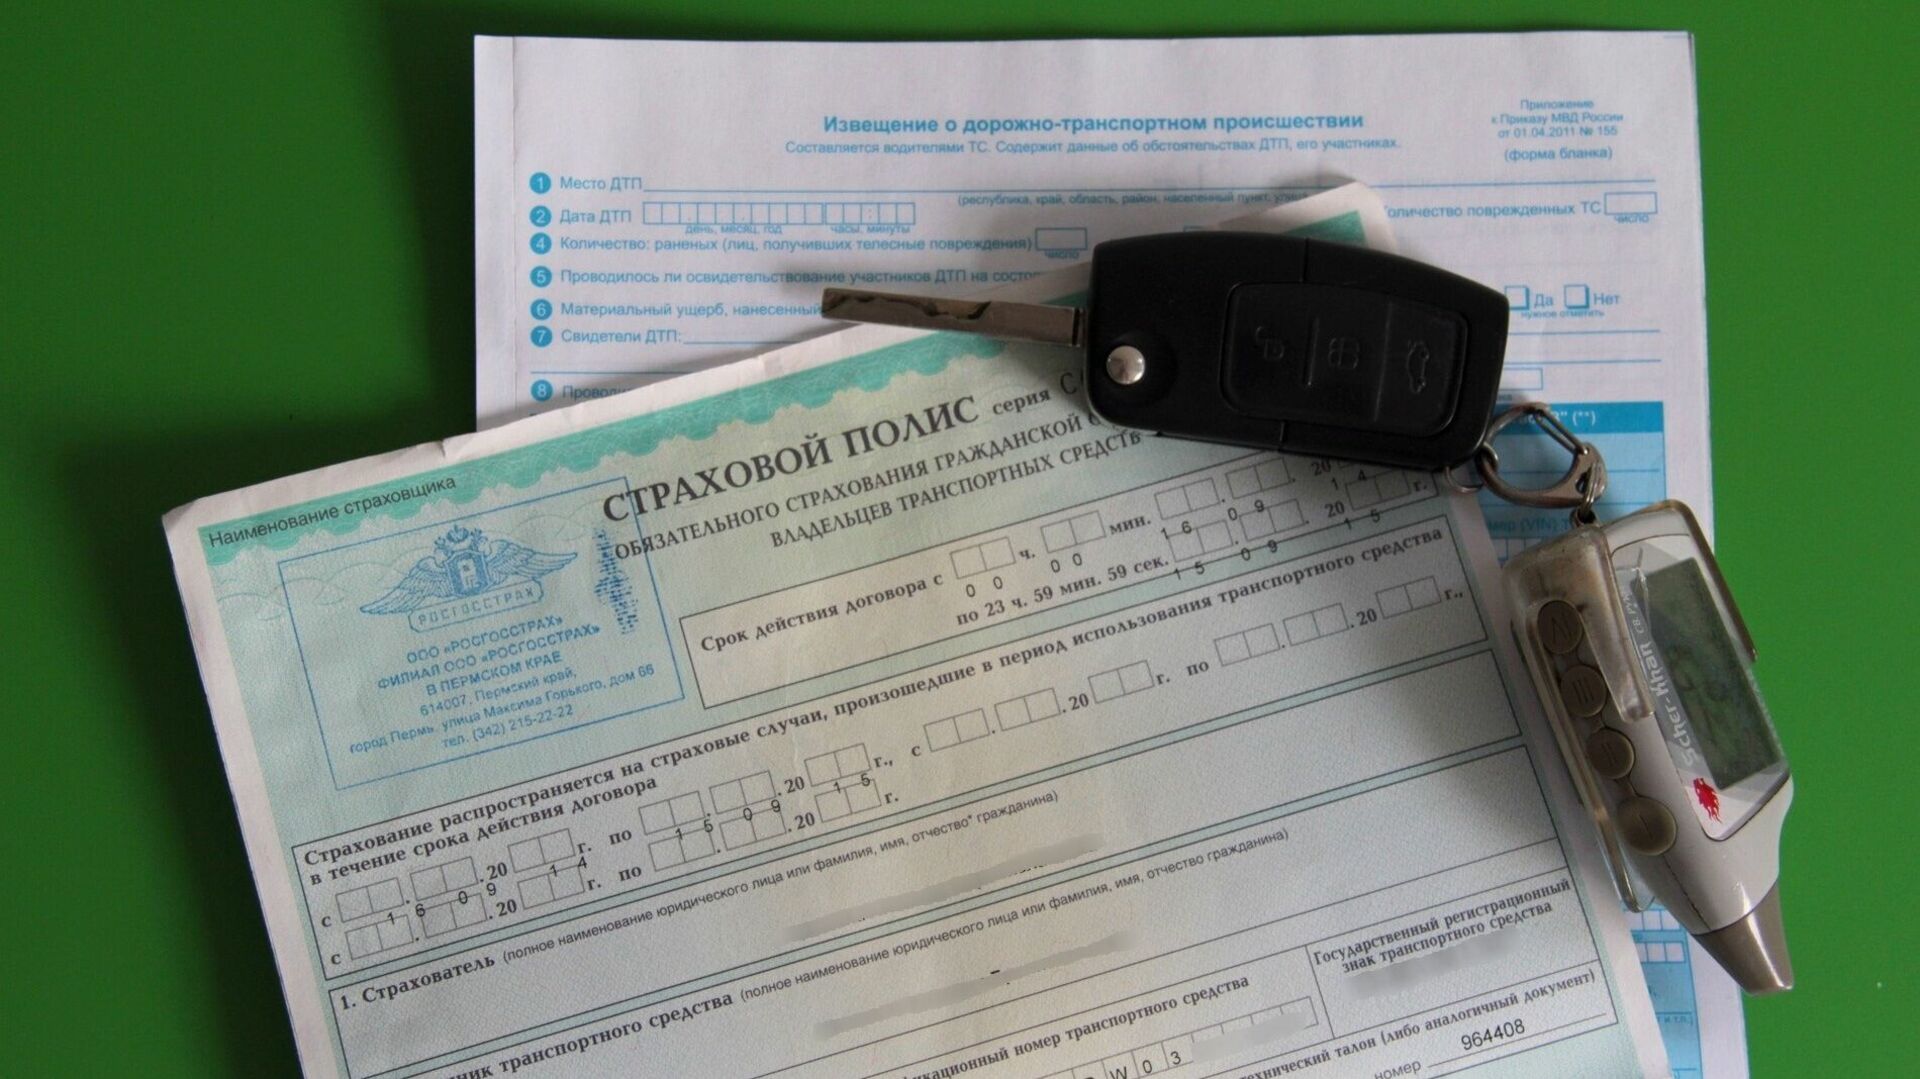 Регистрация машины без страховки. Полис ОСАГО фото заполненный. Открытой страховки фото. Страховка авто в Узбекистане. На какой минимальный срок можно застраховать авто.